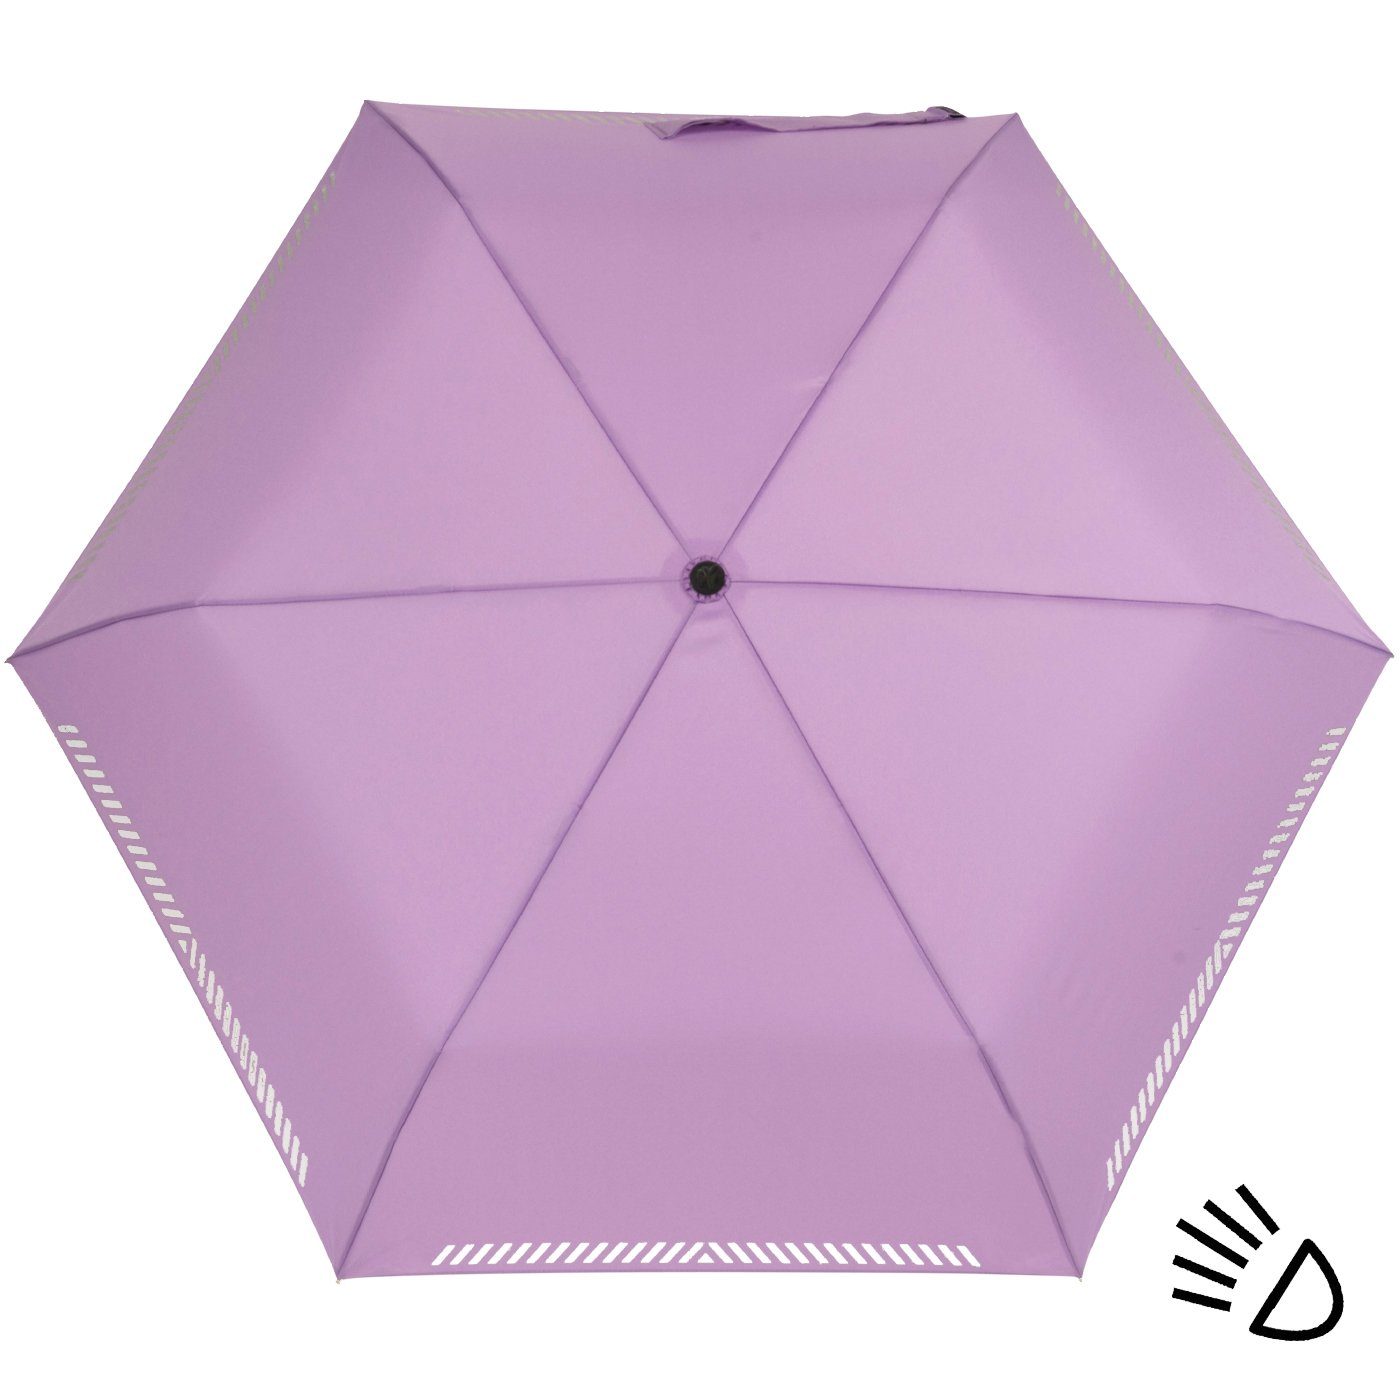 iX-brella Taschenregenschirm berry-light leicht, reflektierend Reflex Kinderschirm extra Safety Mini